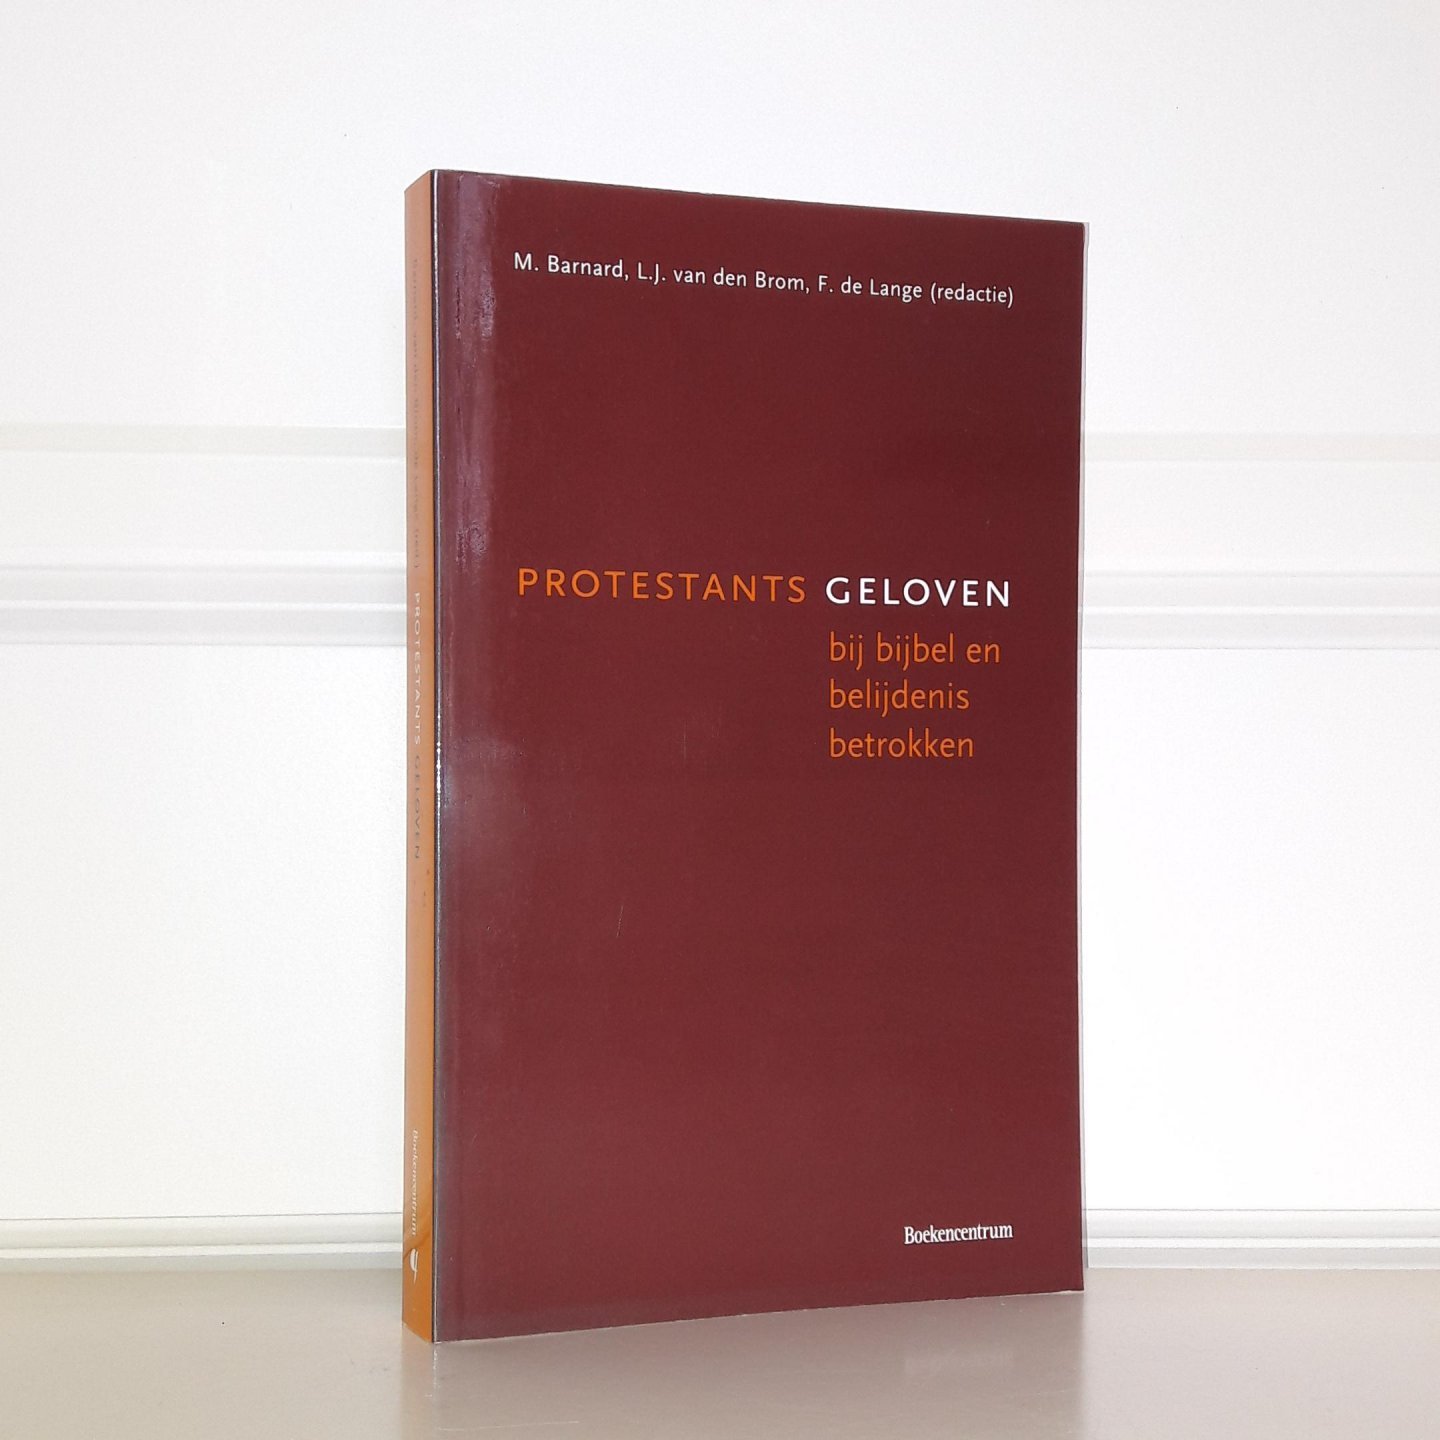 Branard, M. / Brom, L.J. van den / Lange, F. de - Protestants geloven bij bijbel en belijdenis betrokken